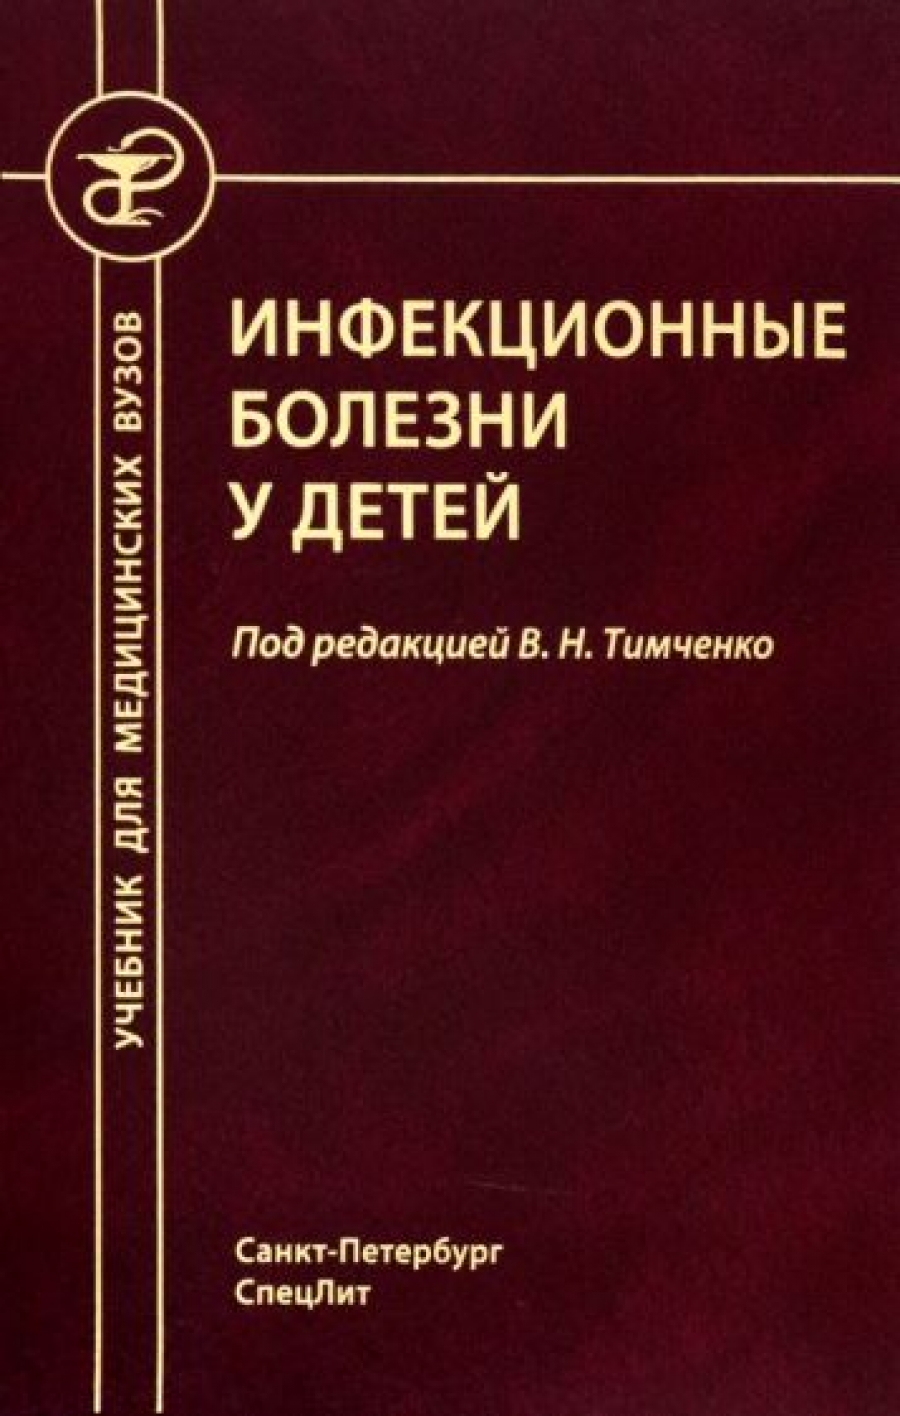 Тимченко В. Н Инфекционные болезни у детей. 5-е издание, перераб, доп. 